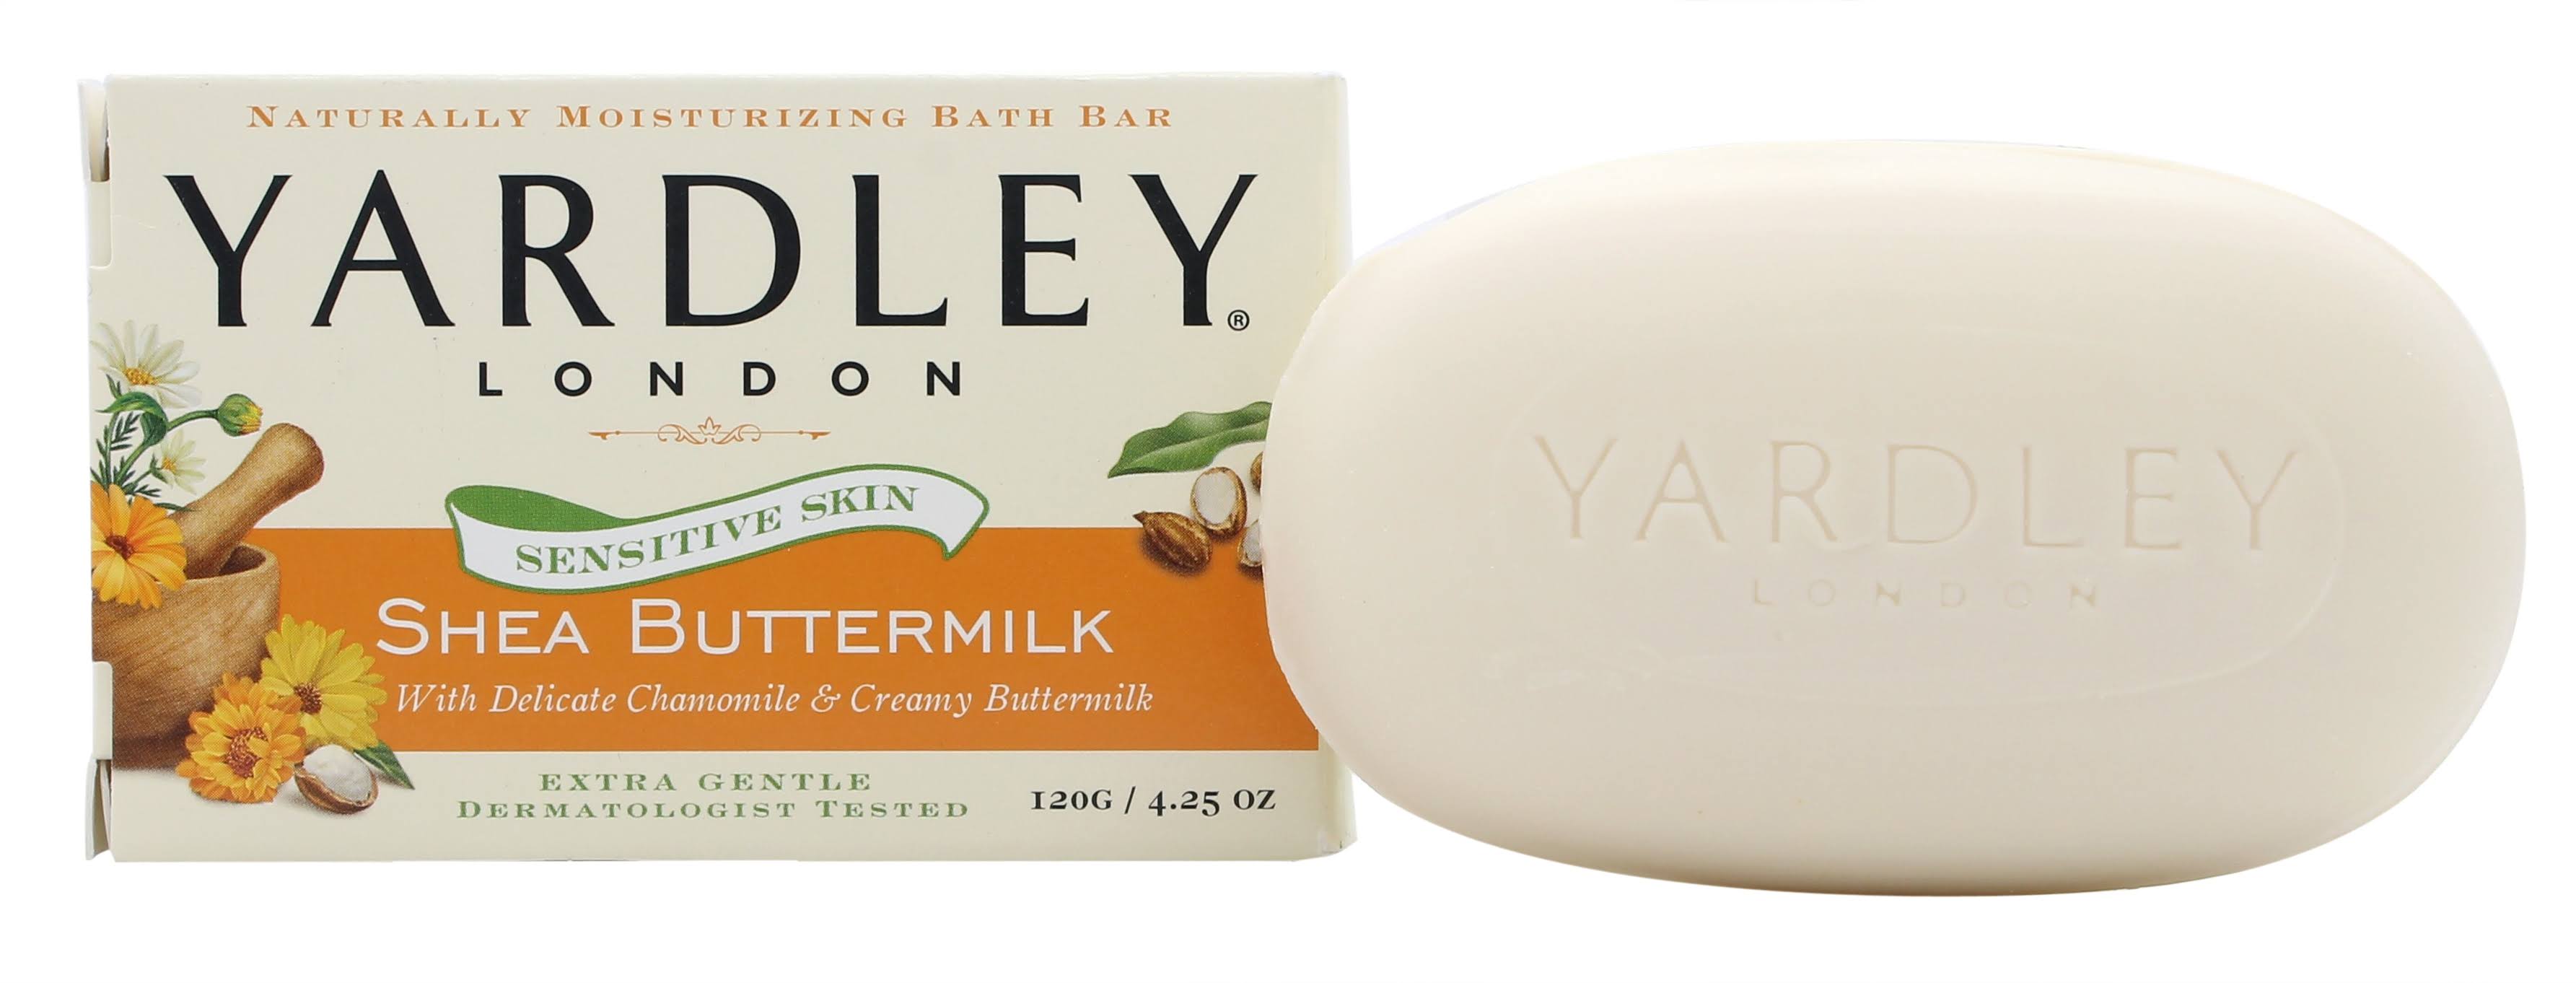 Yardley London Sensitive Skin Shea Buttermilk Bar Soap